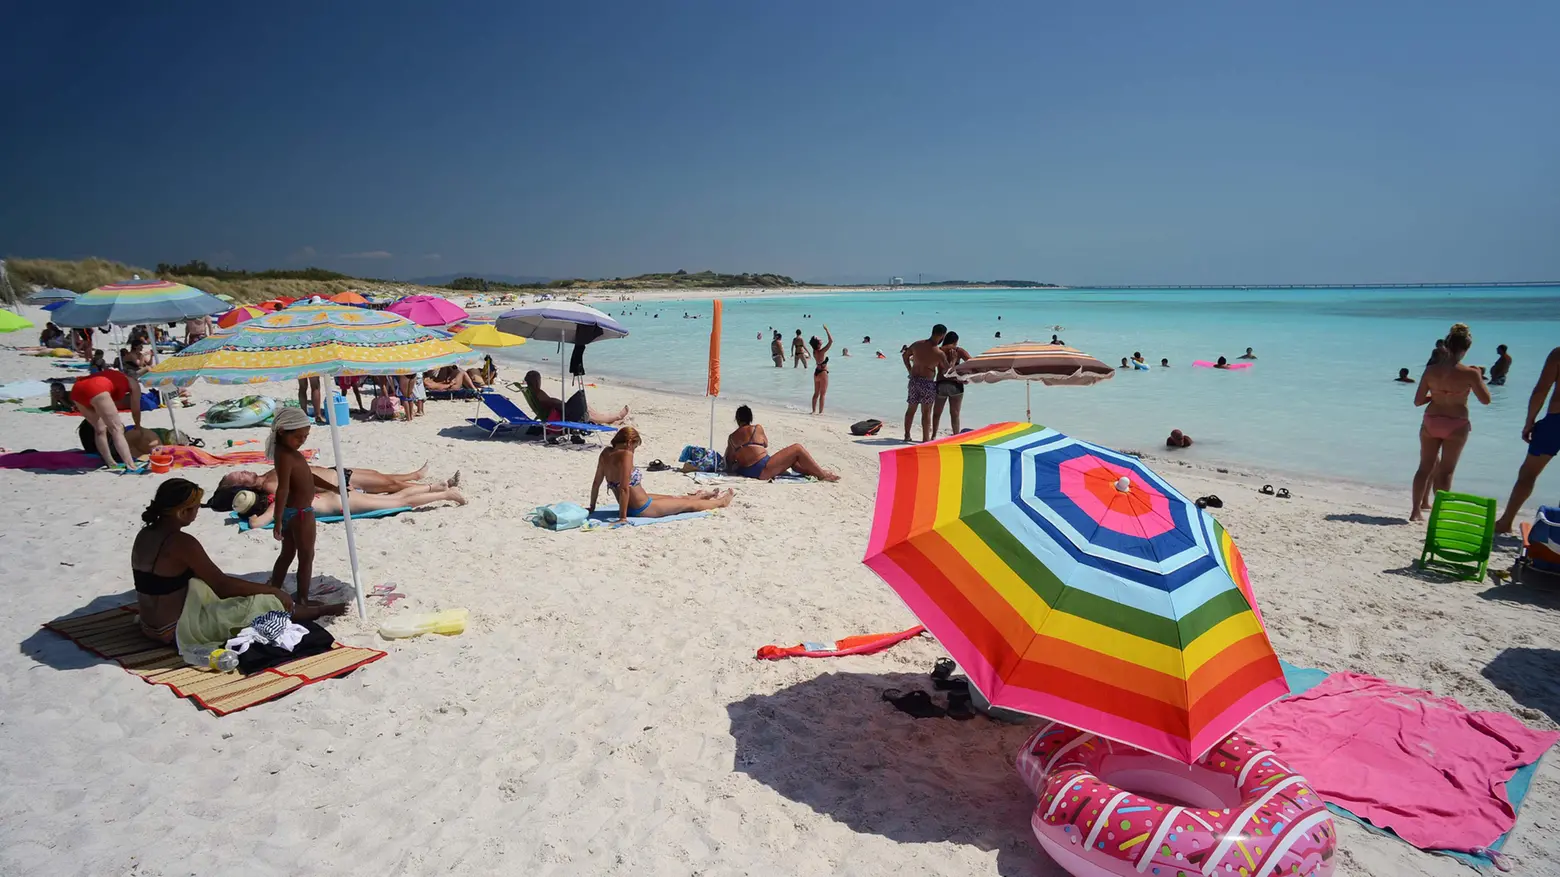 Vanno forte i Caraibi della Toscana  Le Spiagge Bianche piene di turisti